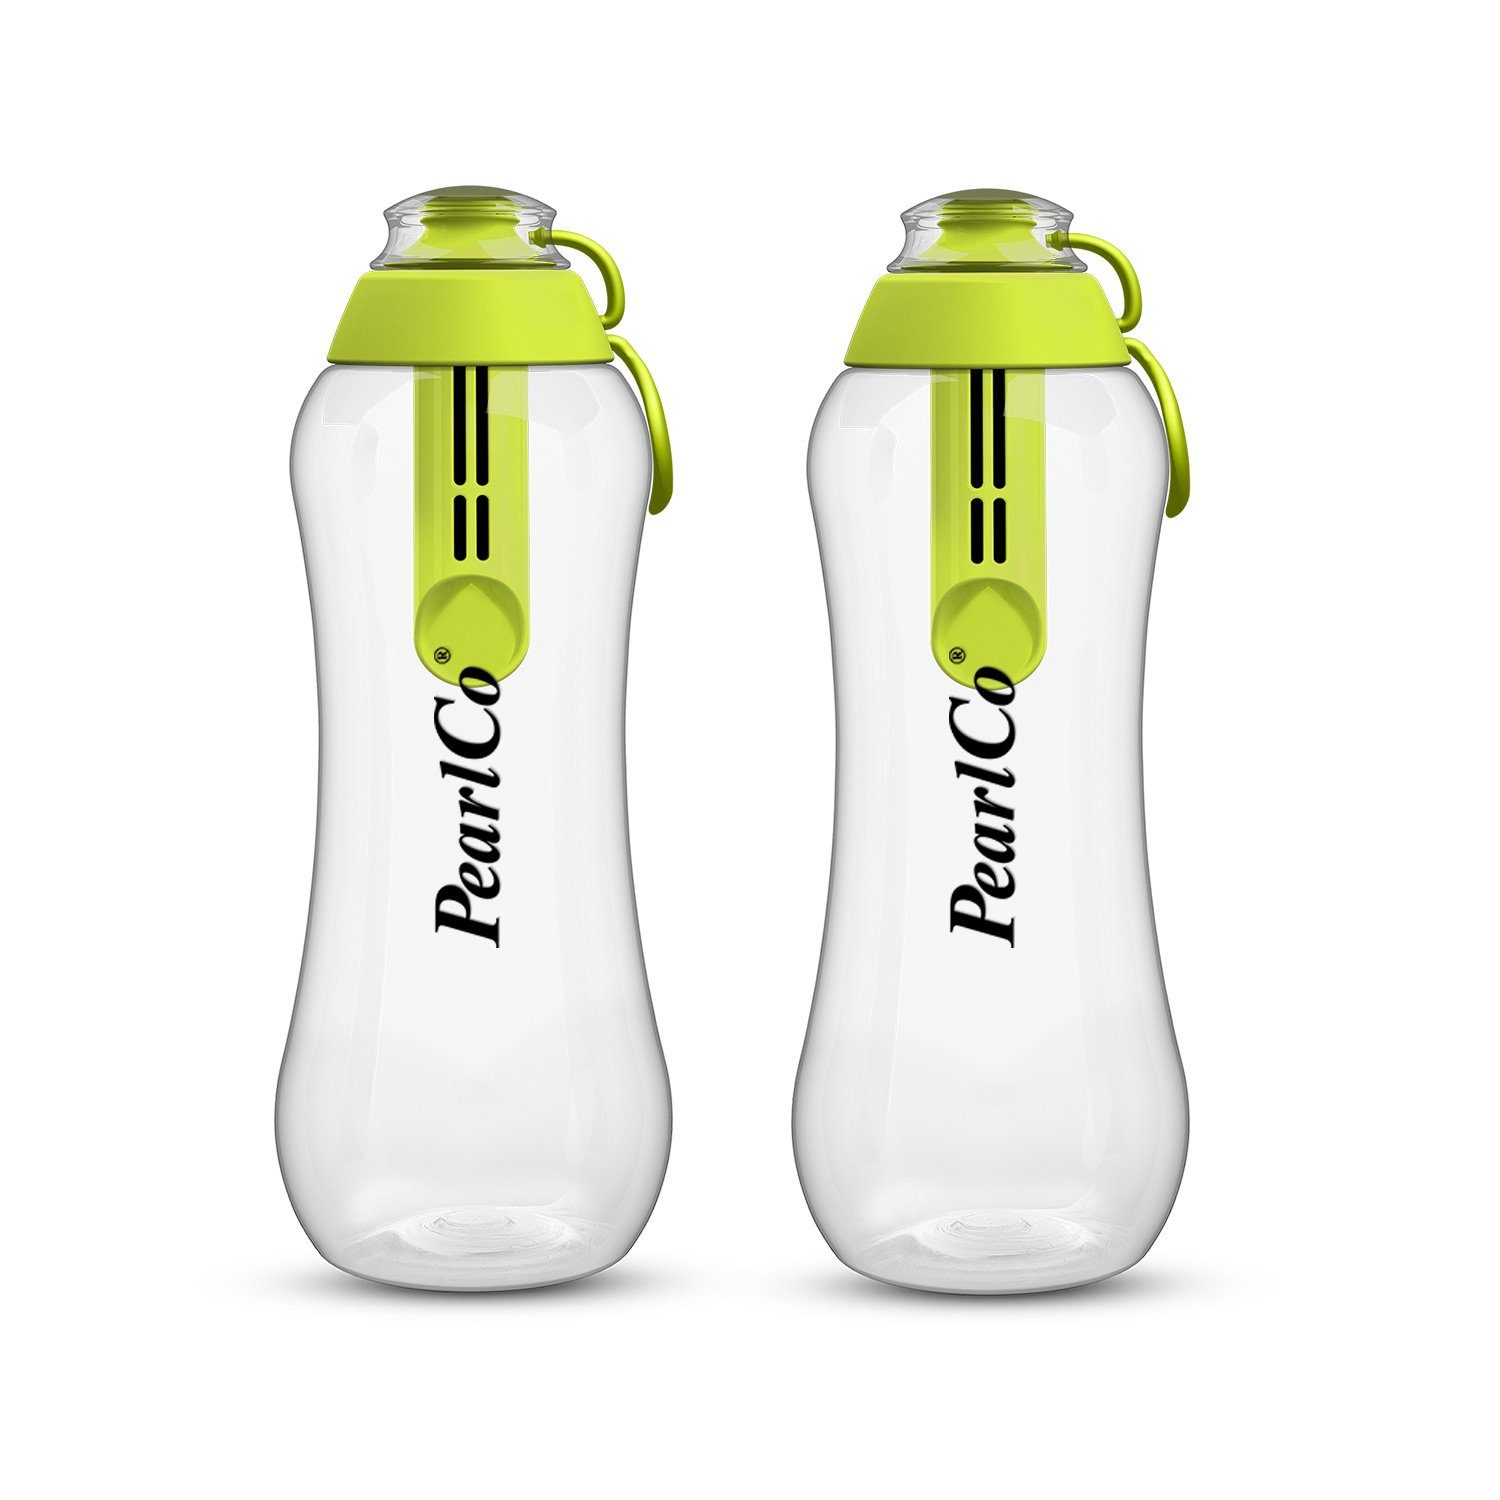 0,7 Zwei Trinkflaschen Liter PearlCo grün mit Filter Trinkflasche